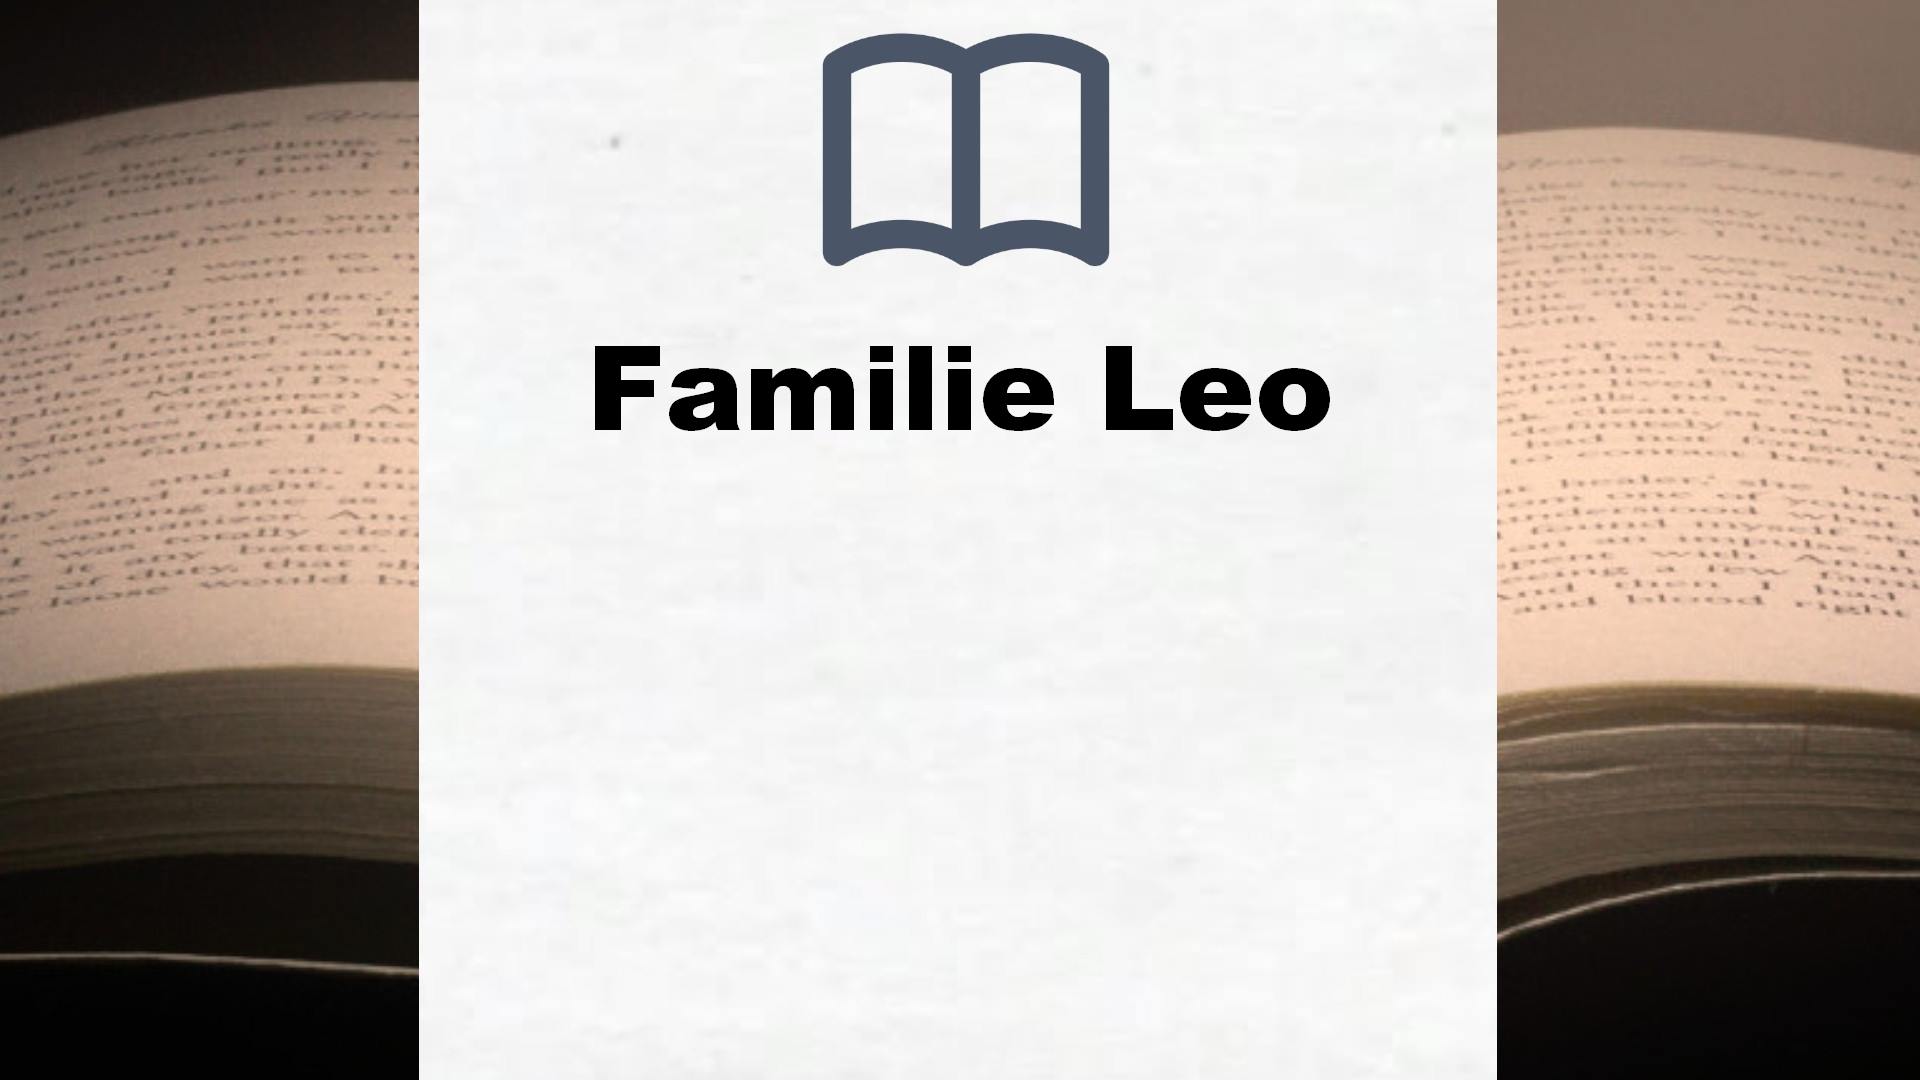 Bücher über Familie Leo